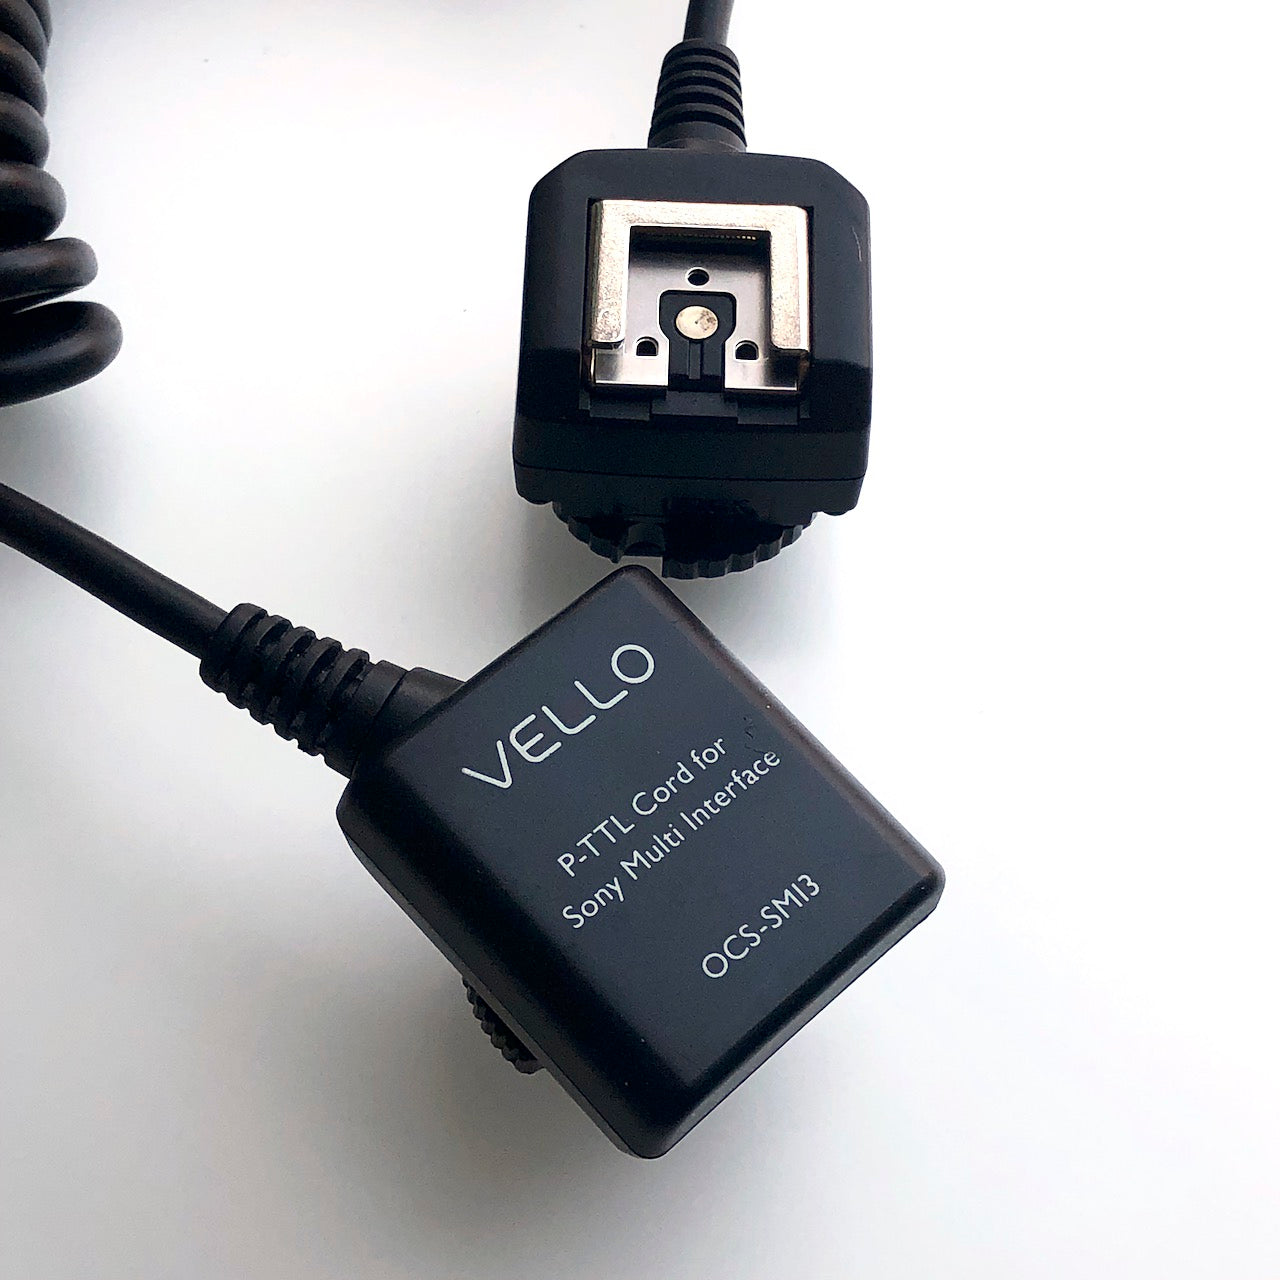 Vello off-camera flash cord for Sony P-TTL